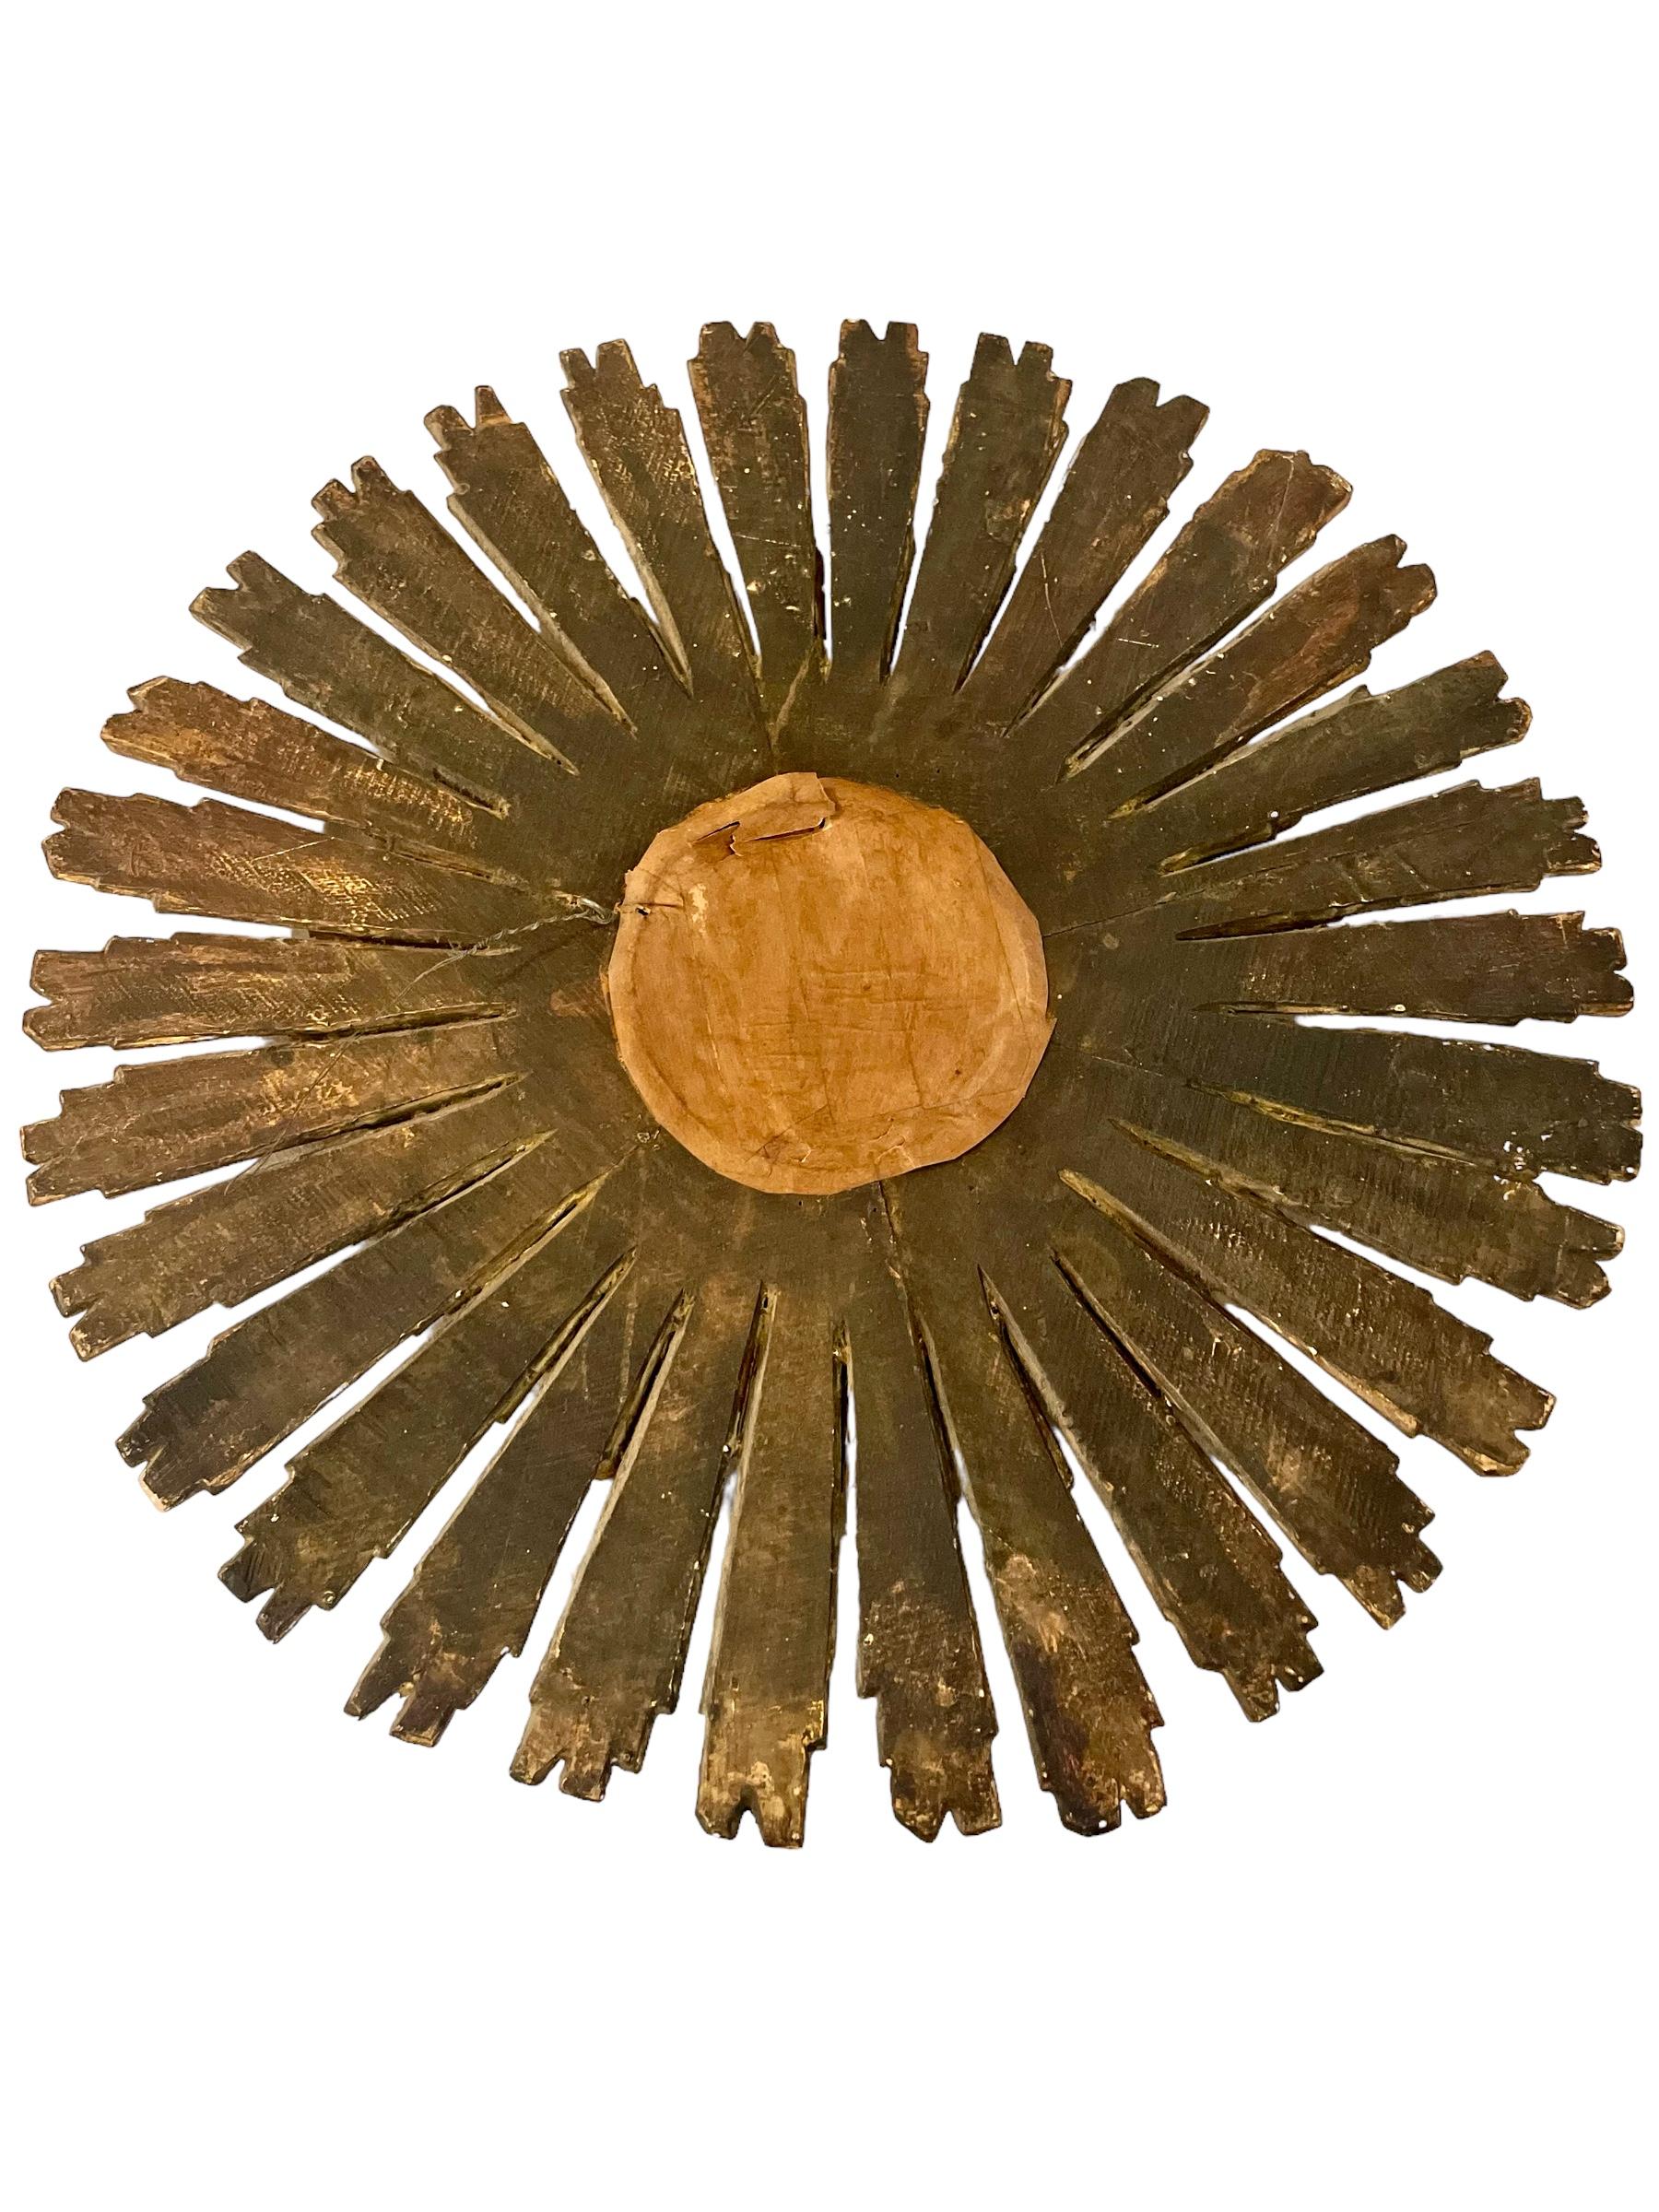 Grand miroir convexe en bois doré avec rayons de soleil ou 